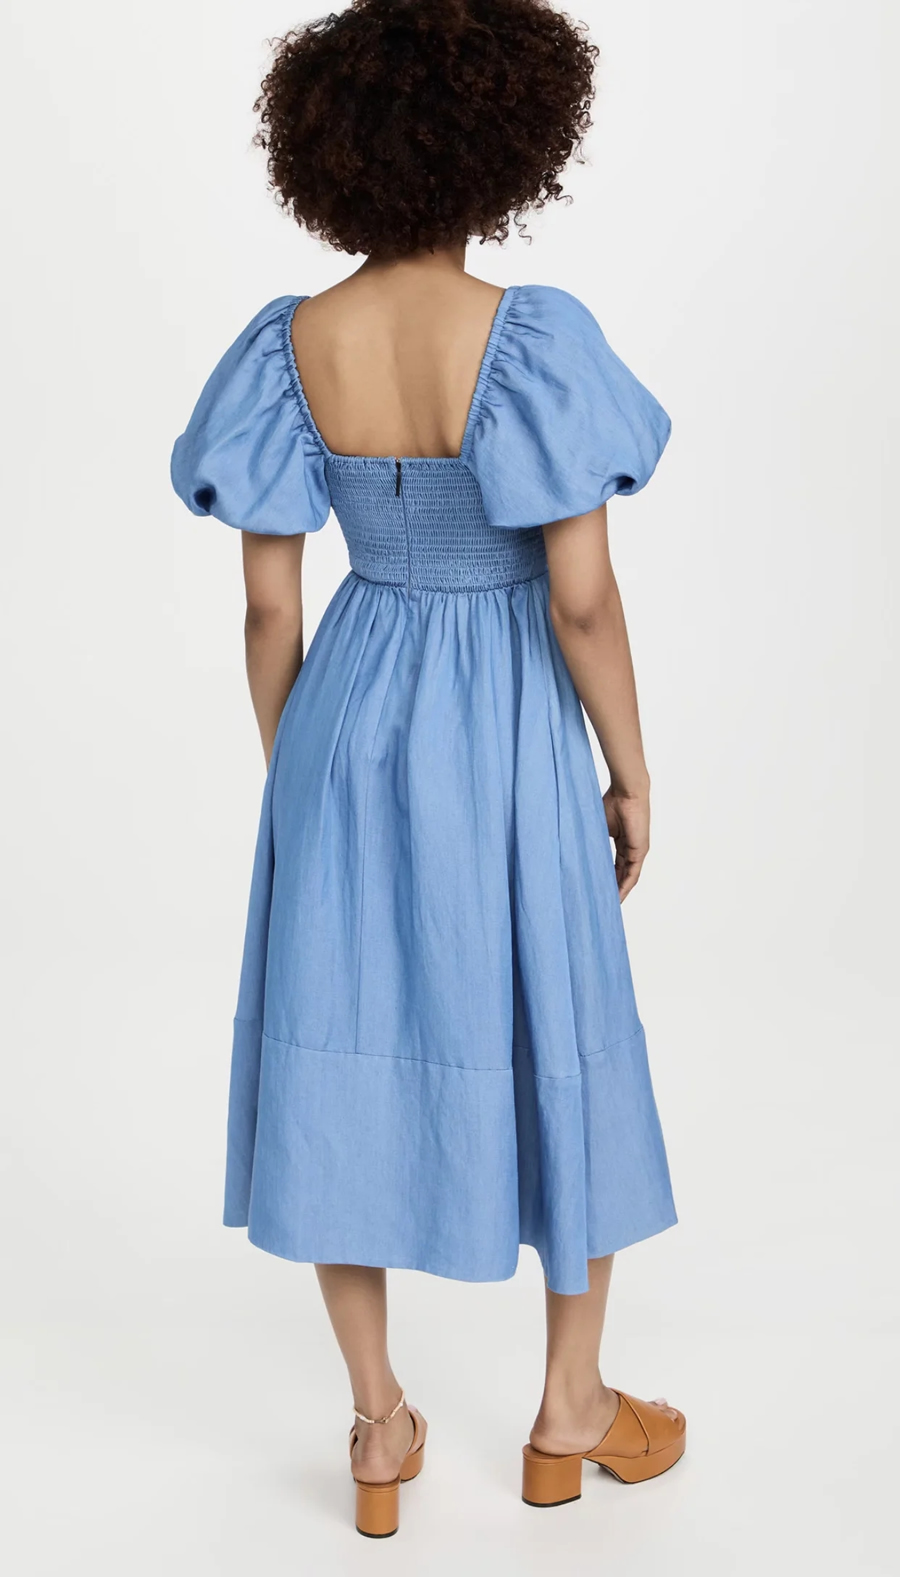 Fashion Light Blue Woven Puff Sleeve Waist Dress,Long Dress